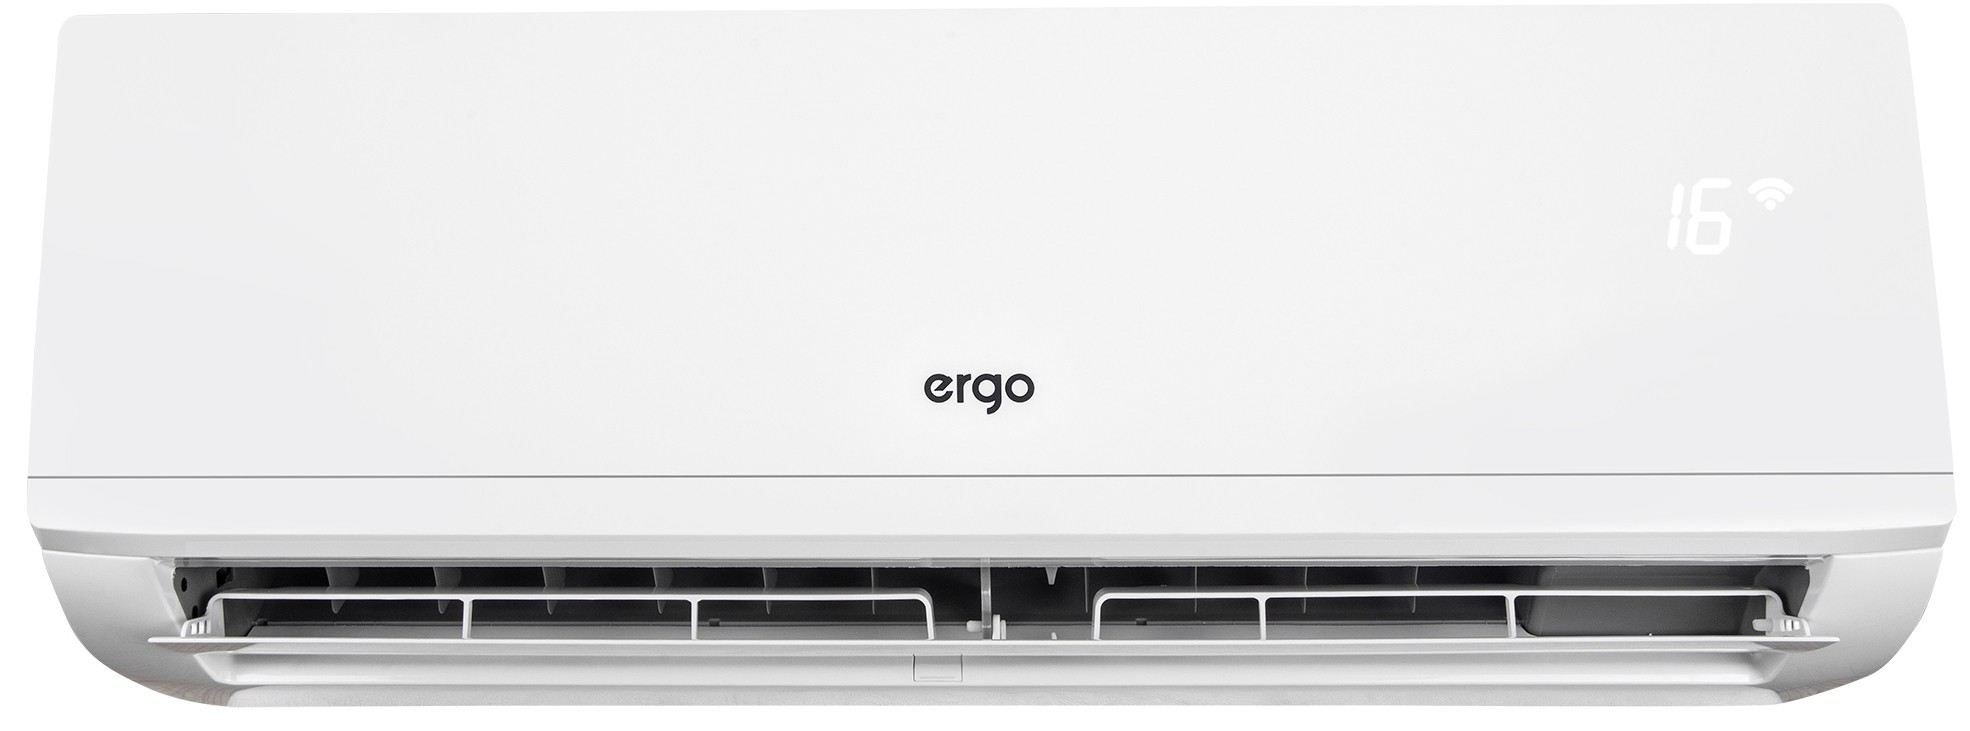 продукт Ergo ACI 1252 CHW - фото 14